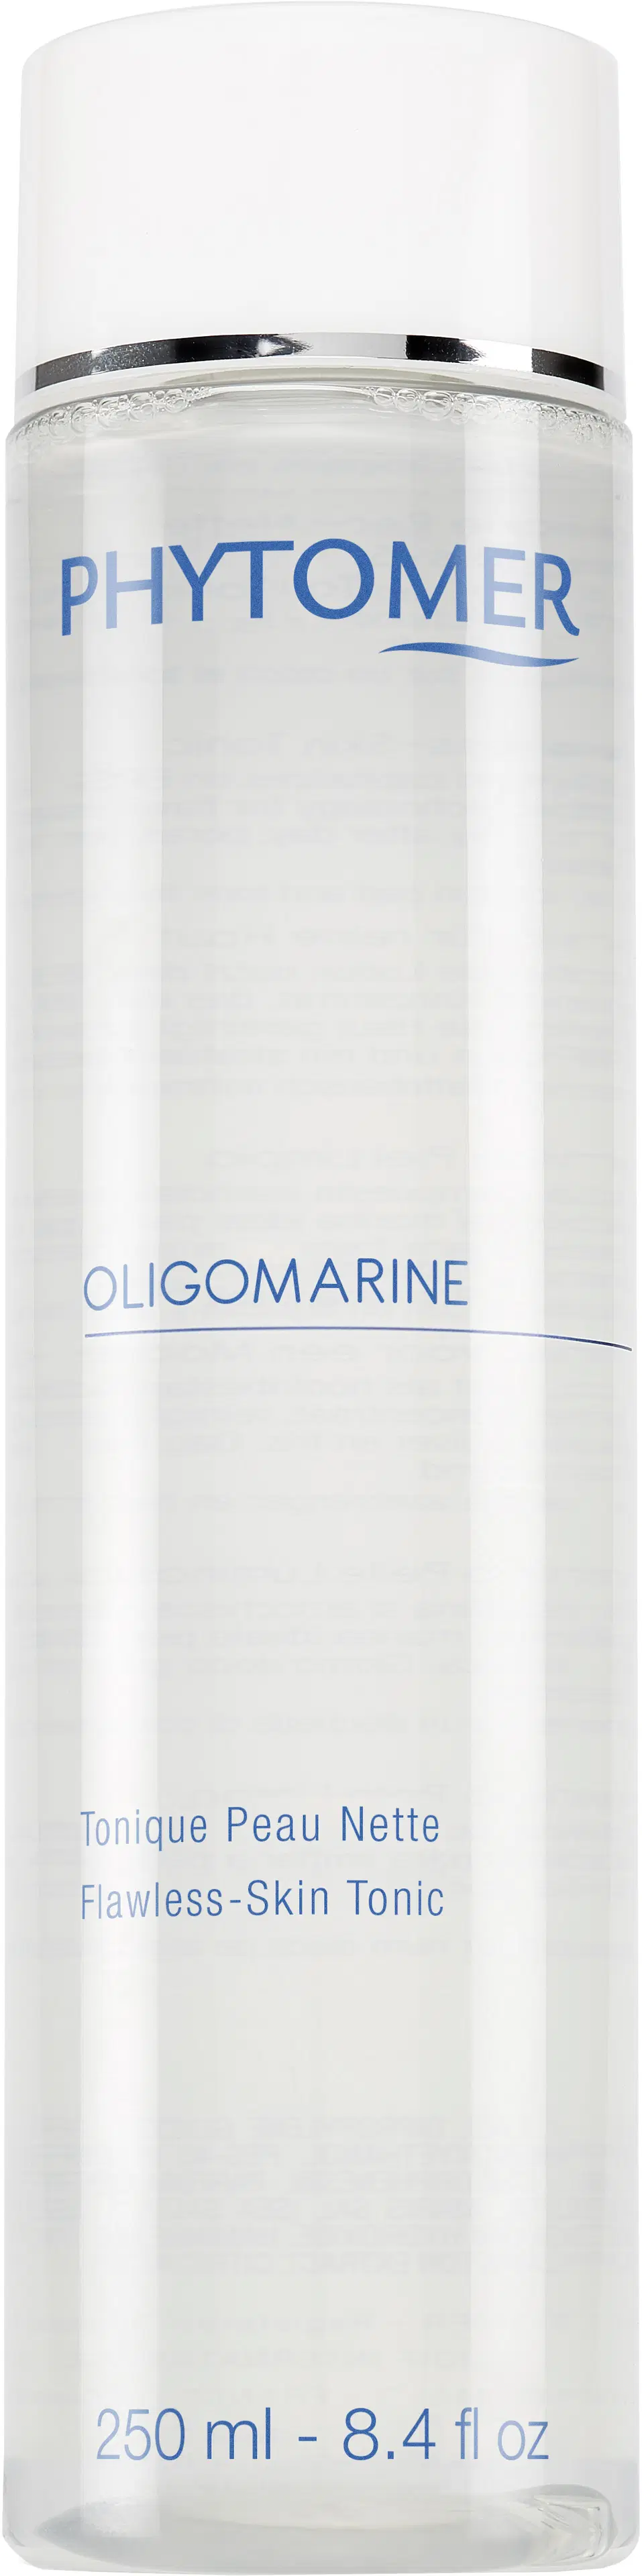 Phytomer Oligomarine kasvovesi 250 ml